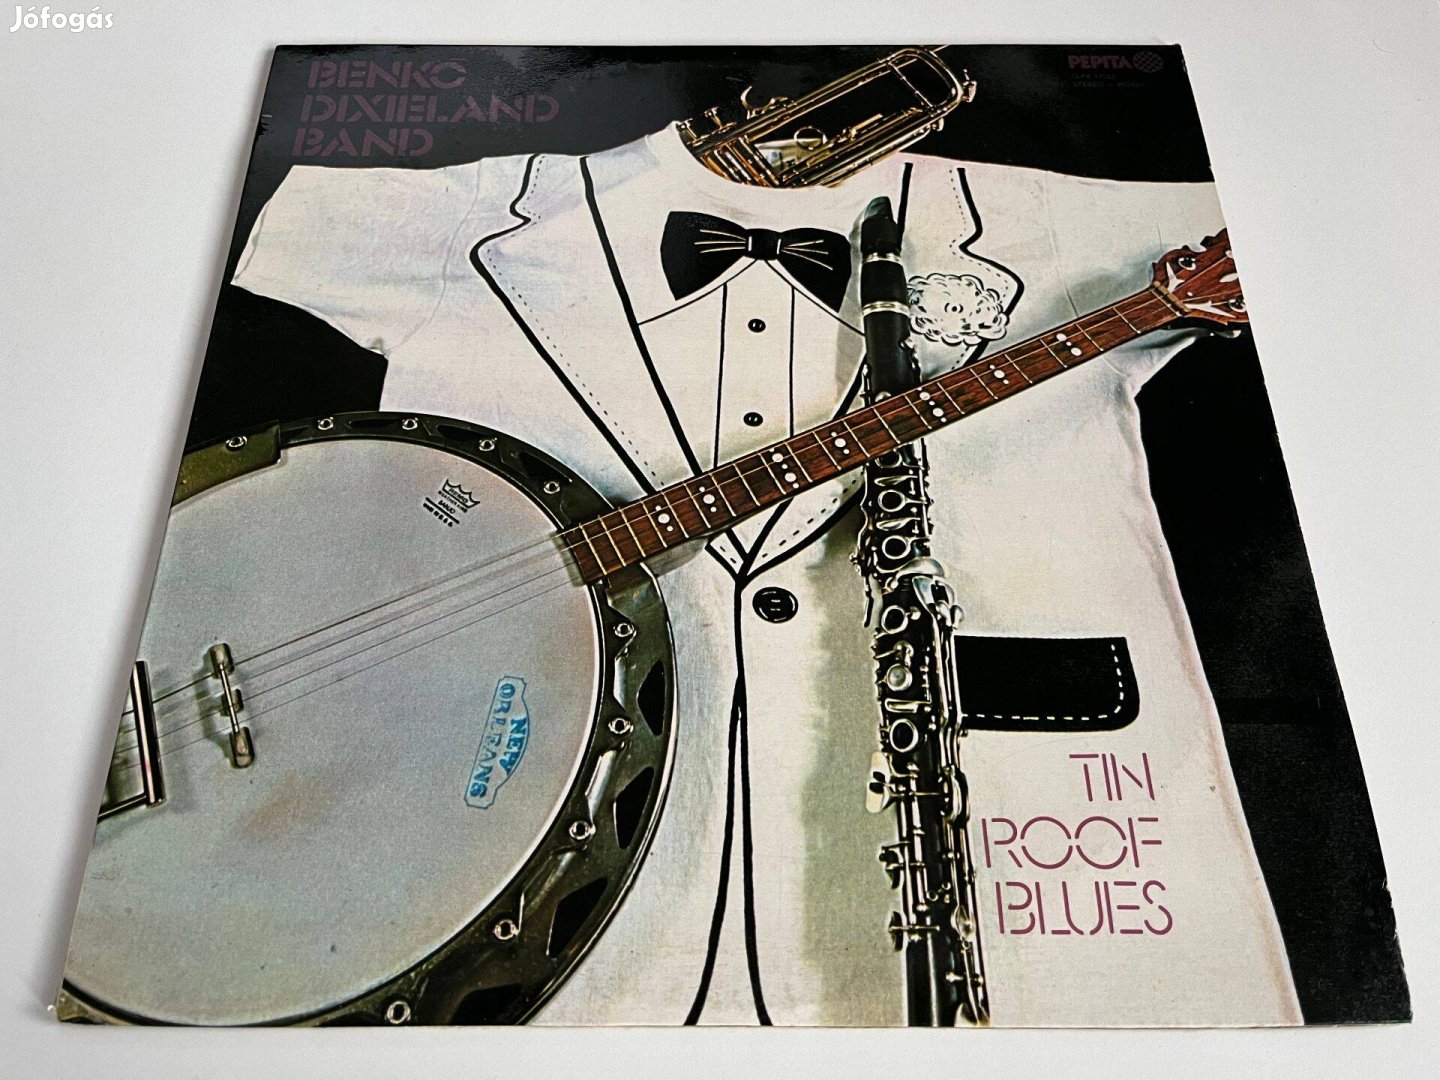 Benkó Dixieland Band: Tin Roof Blues bakelit, vinyl, LP